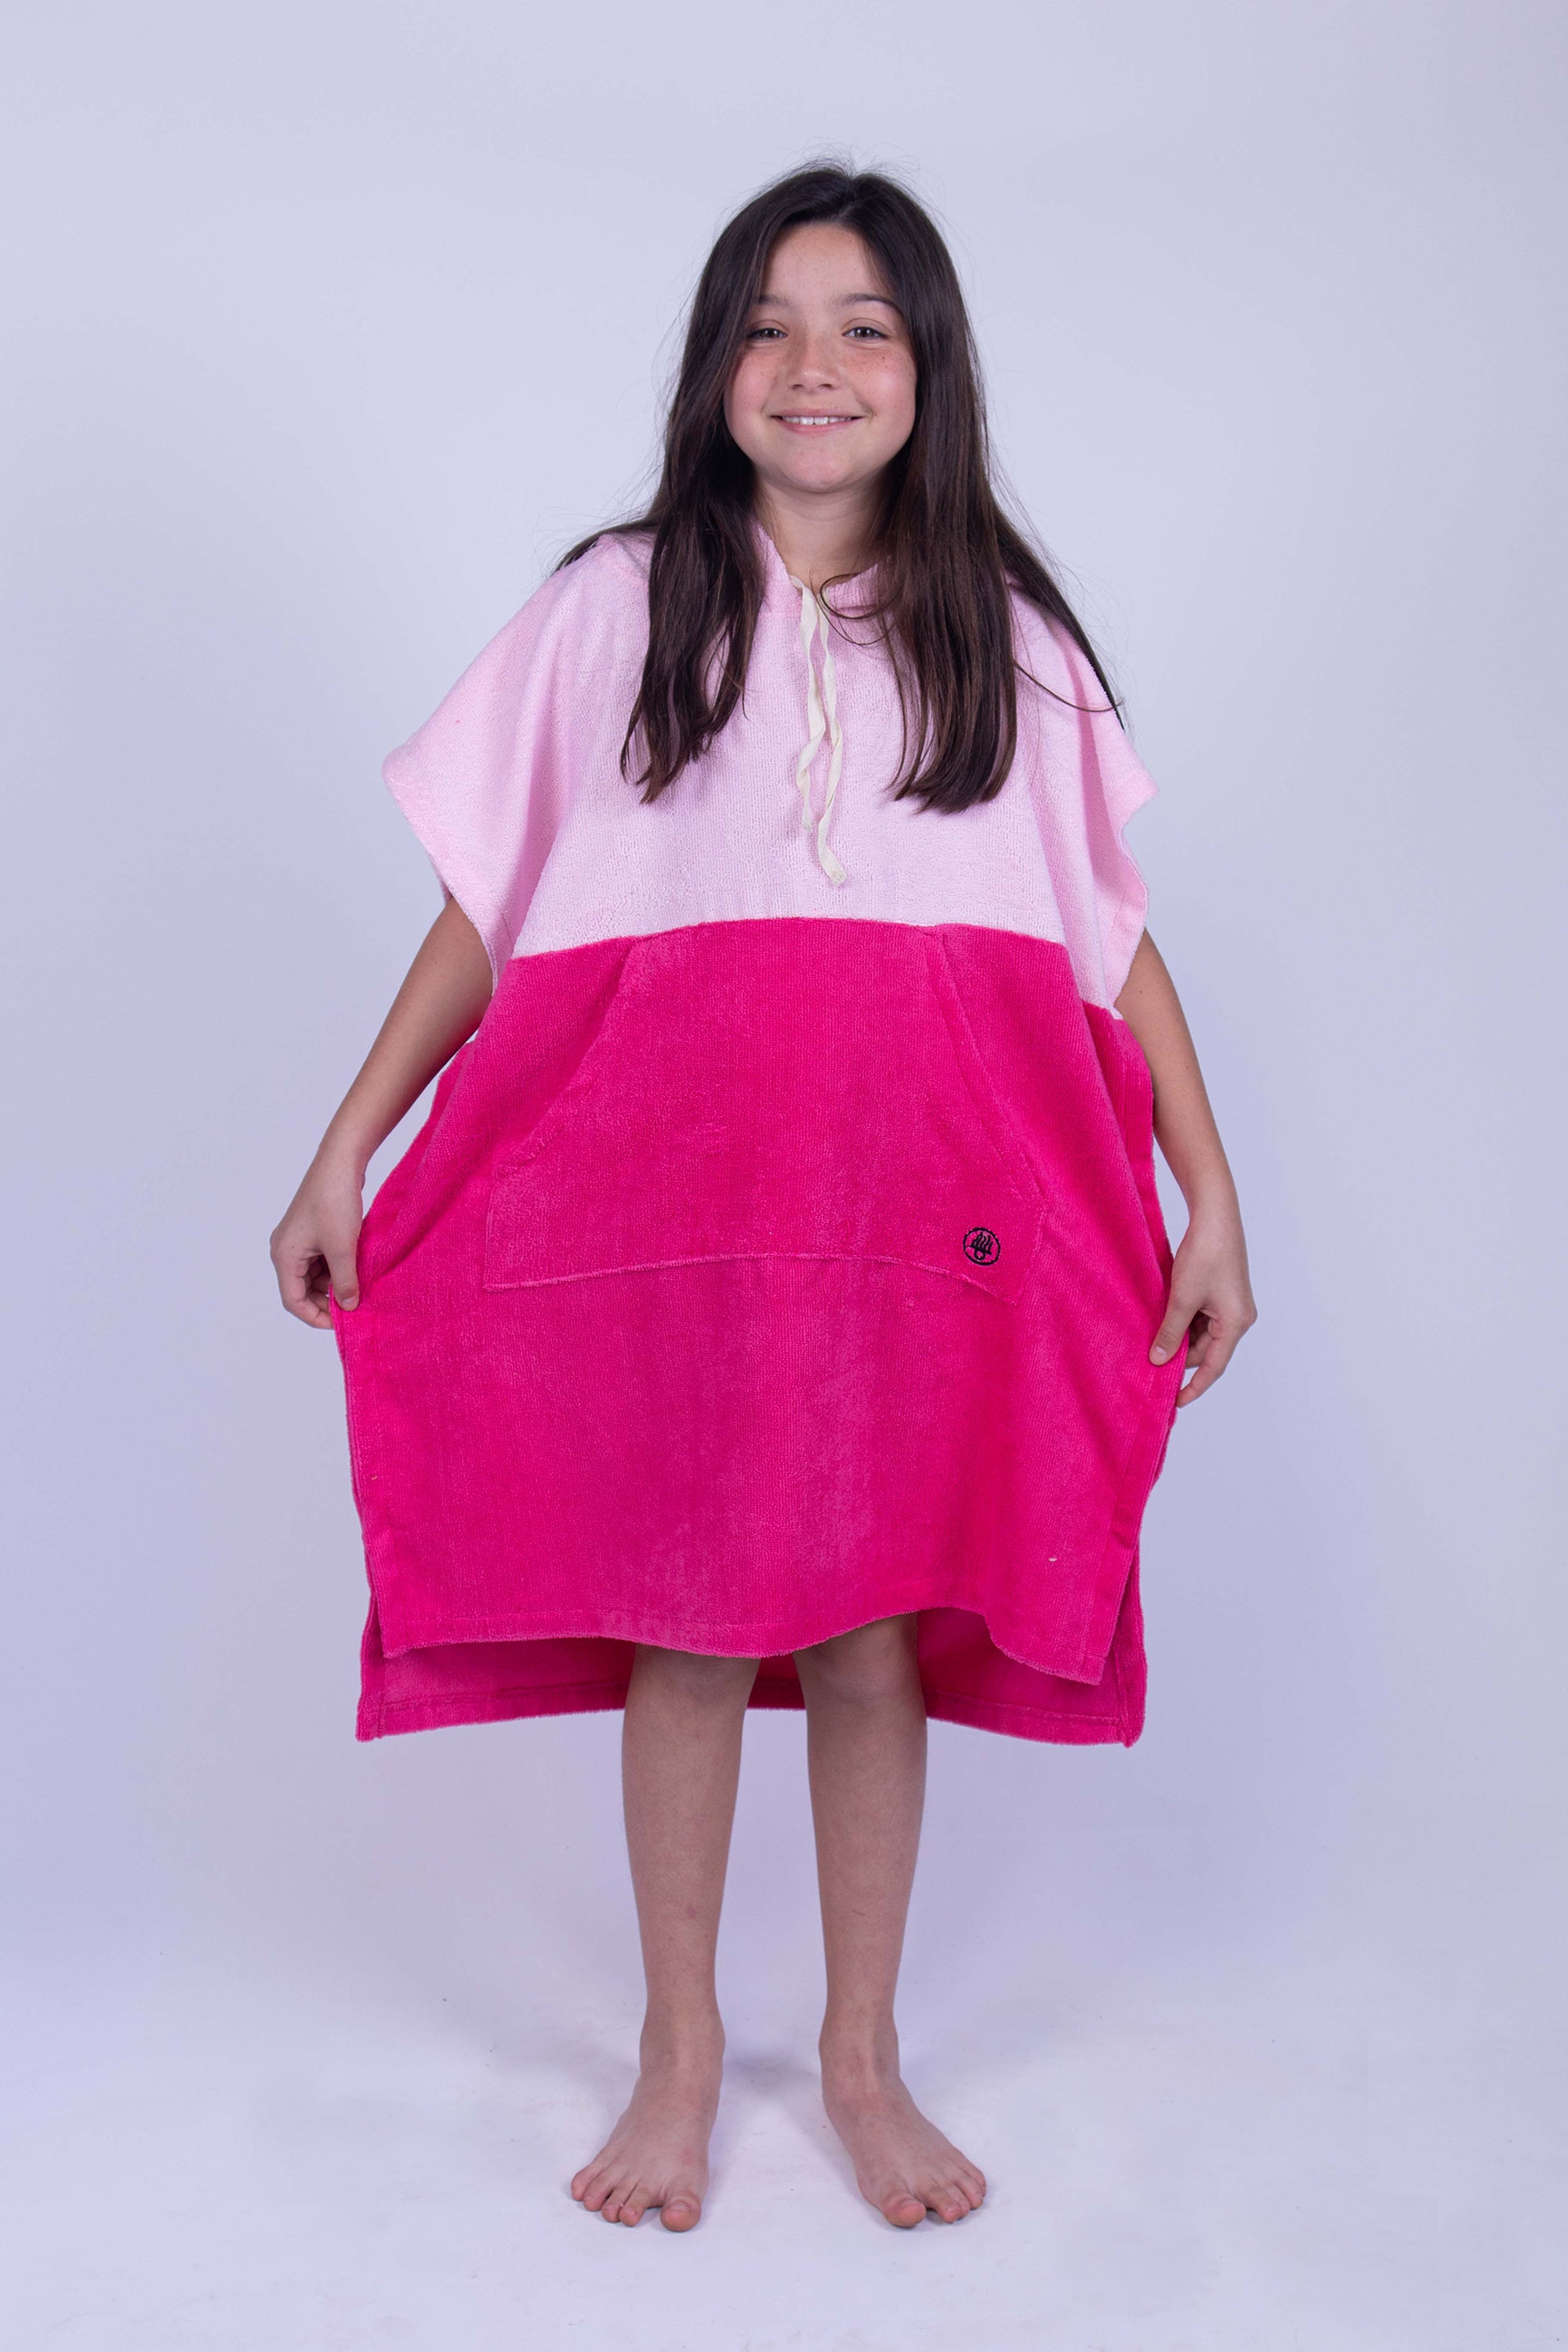 Poncho toalla cambiador de dos colores (Baby pink y rosa mexicano), con bolso en frente y gorro. Ideal para cambiarte en cualquier lugar cómodamente y estar en el después del agua. Para niños y niñas.